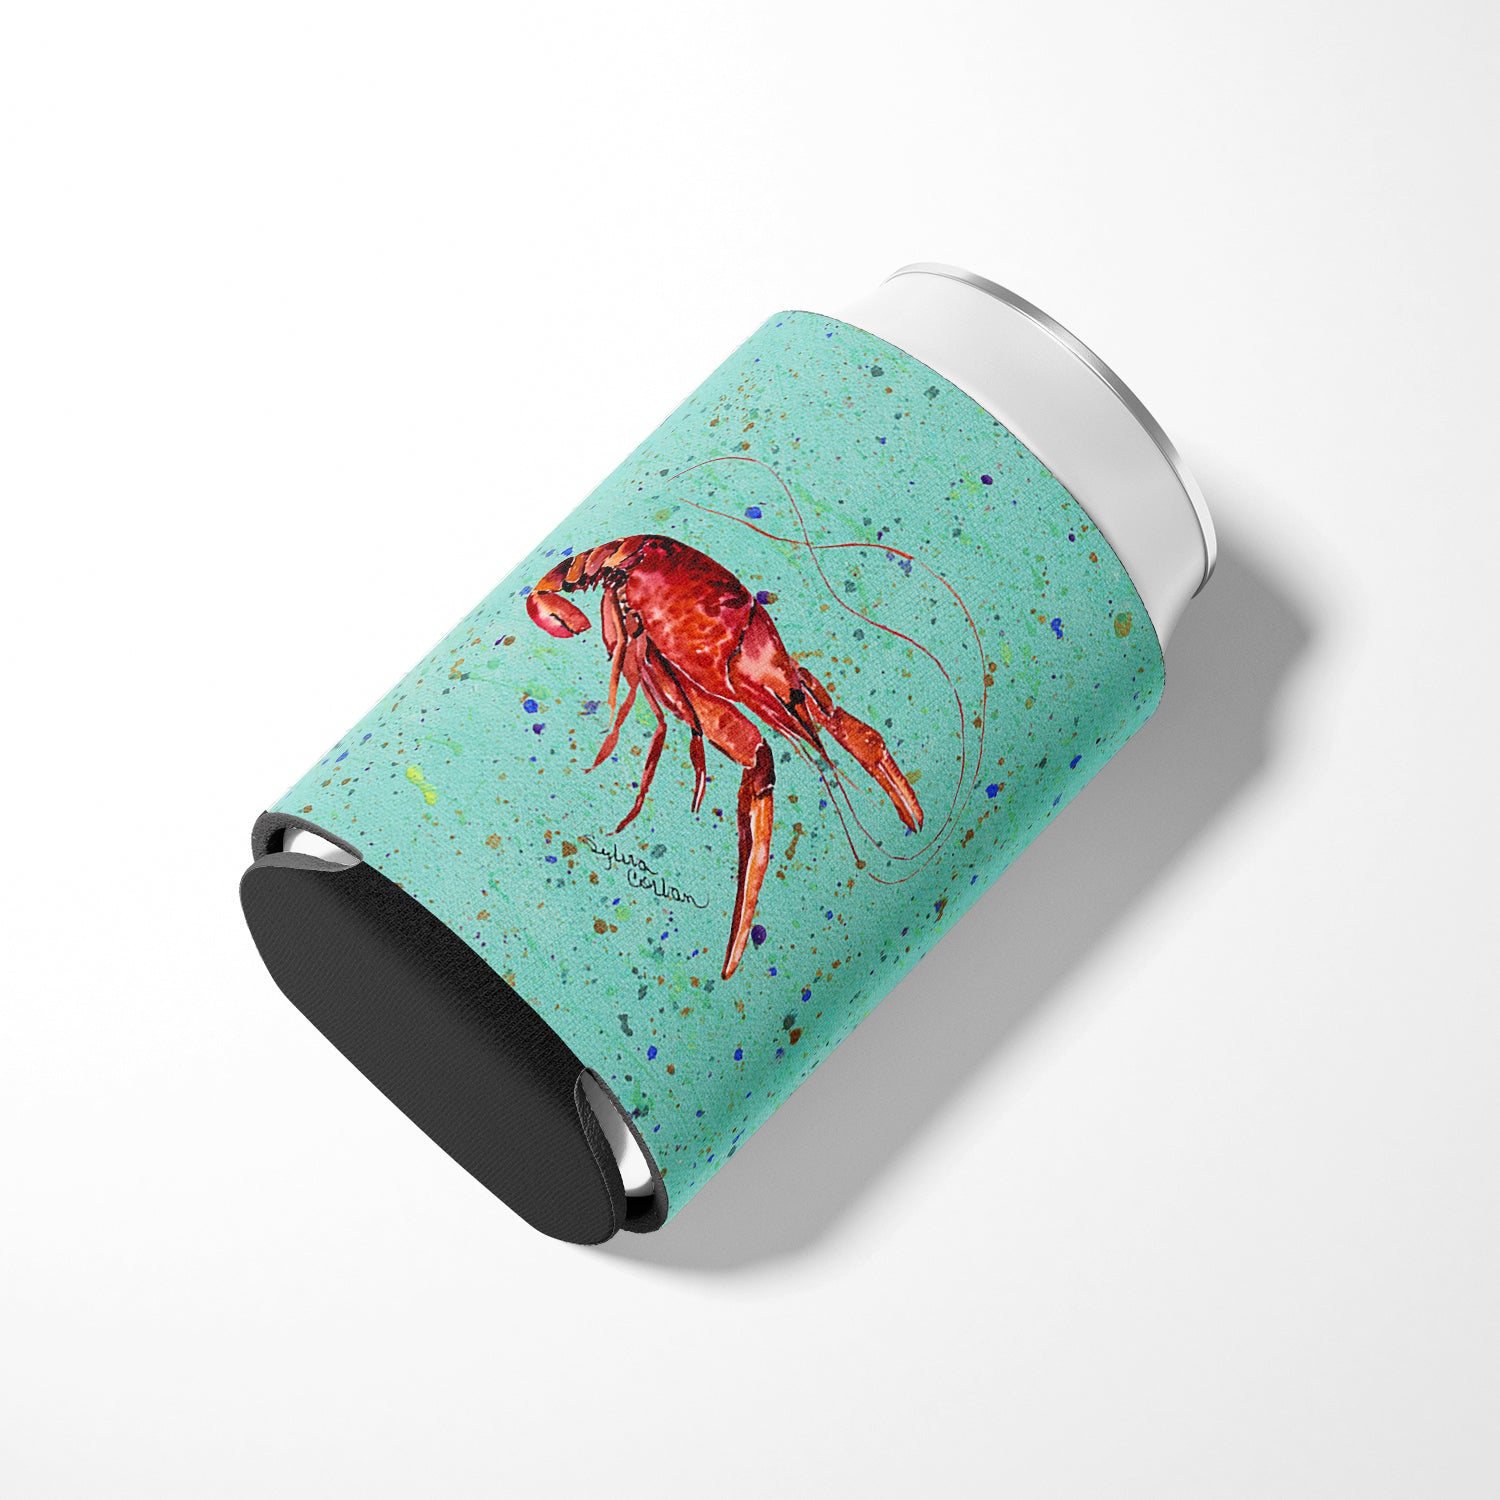 Crawfish  on Teal Can or Bottle Beverage Insulator Hugger